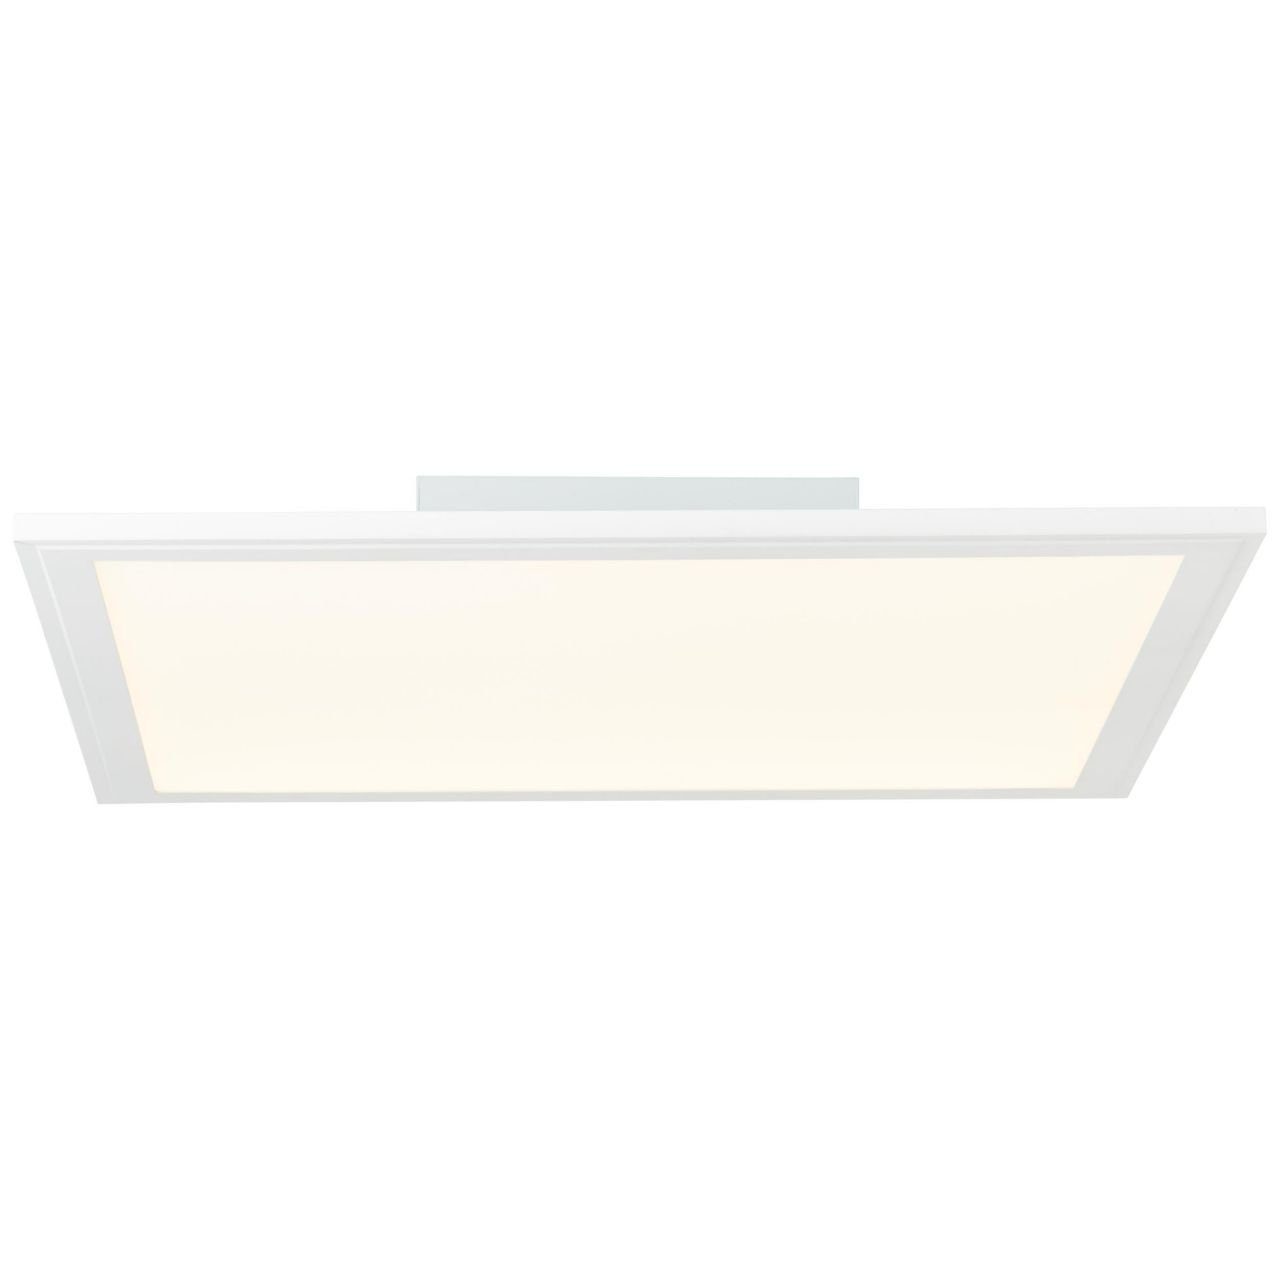 24W Abie RGB LED 40x40cm 1x Deckenaufbau-Paneel Brilliant 2700-6200K, Deckenleuchte Lampe weiß Abie, LED integ